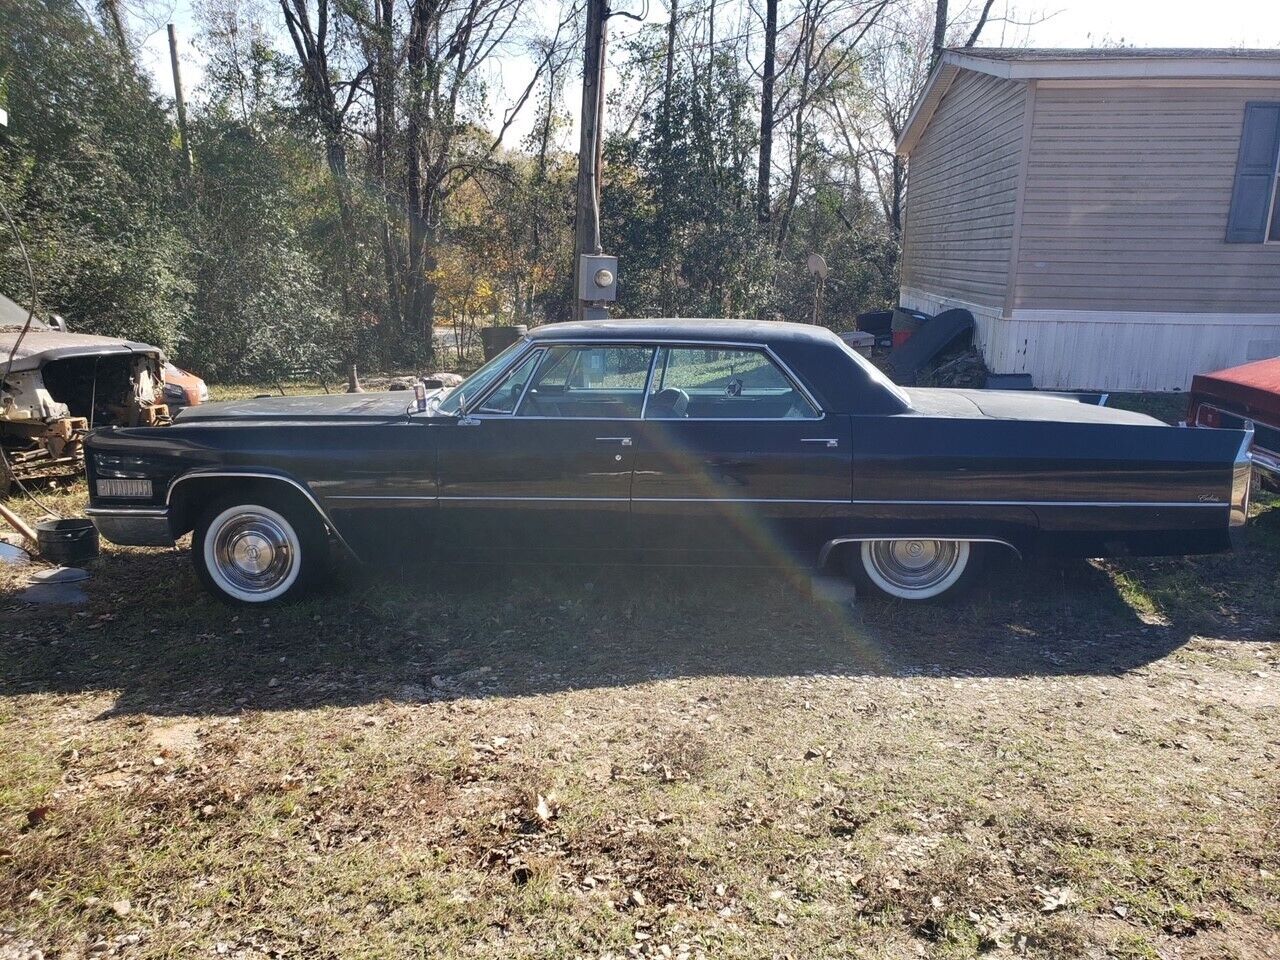 1966 Cadillac Calais